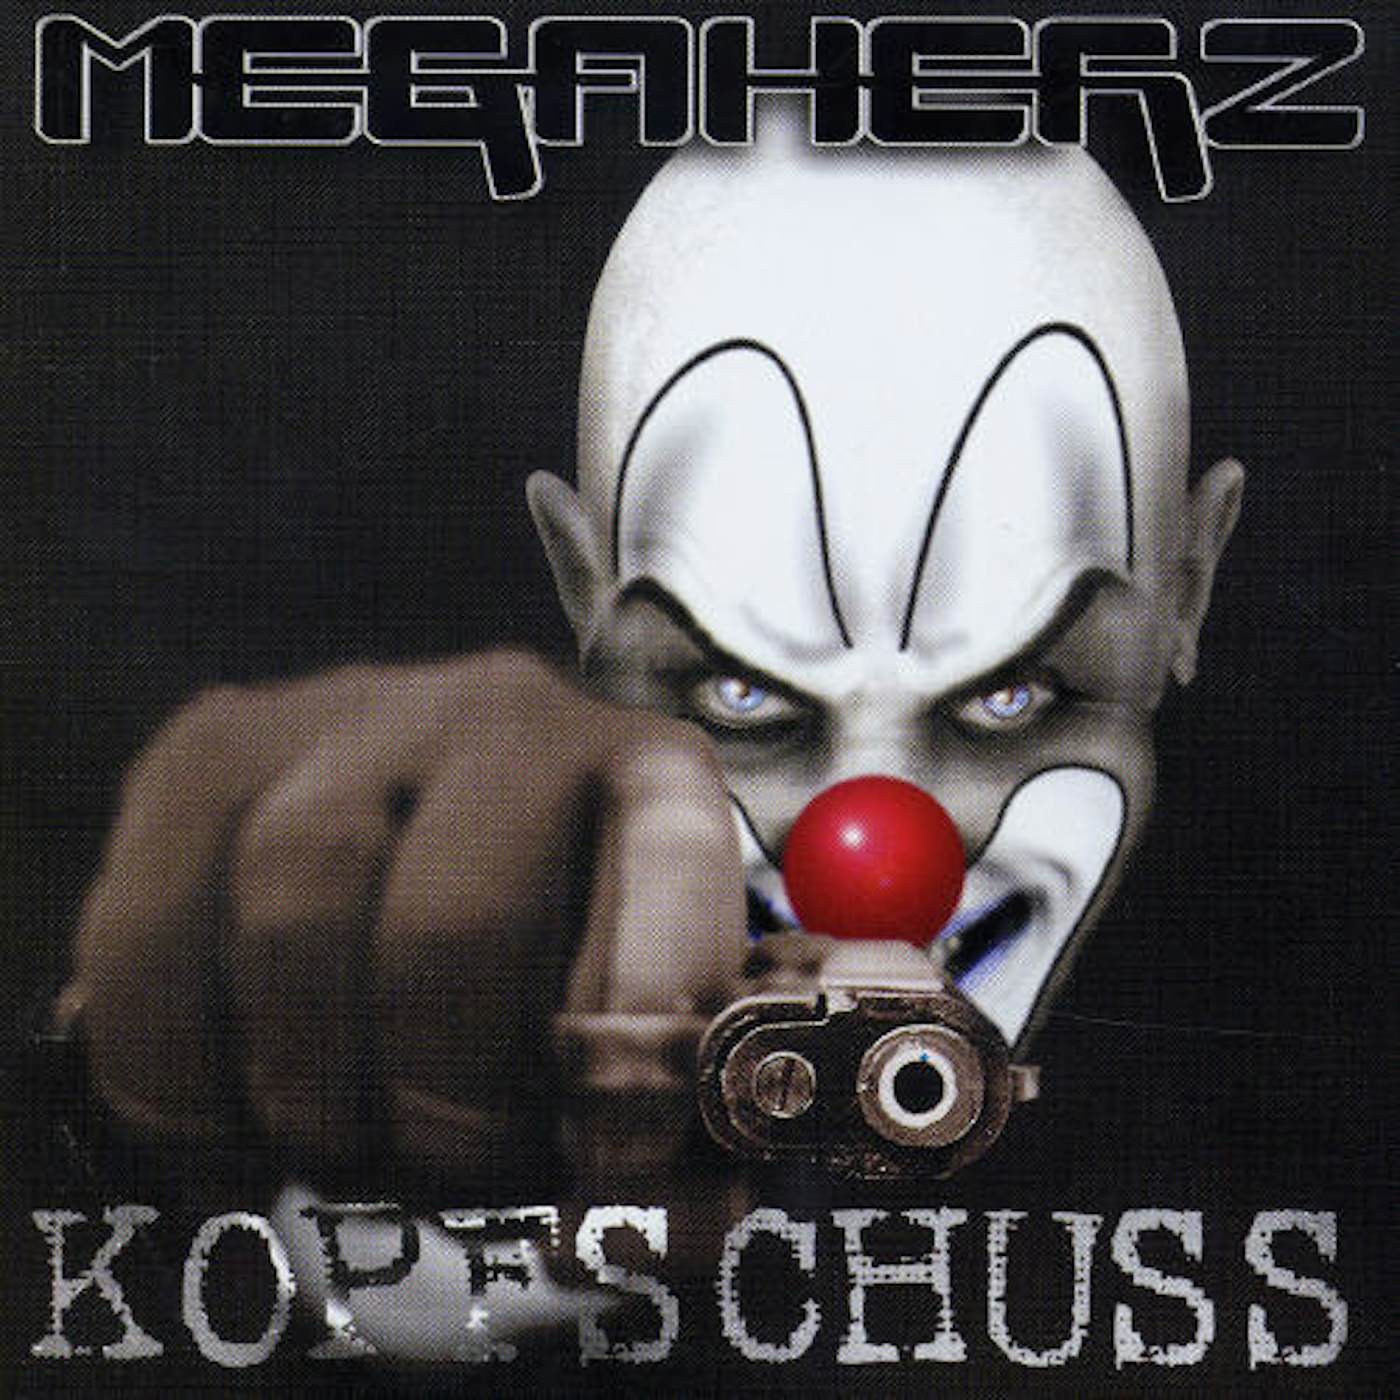 Megaherz KOPFSCHUSS CD